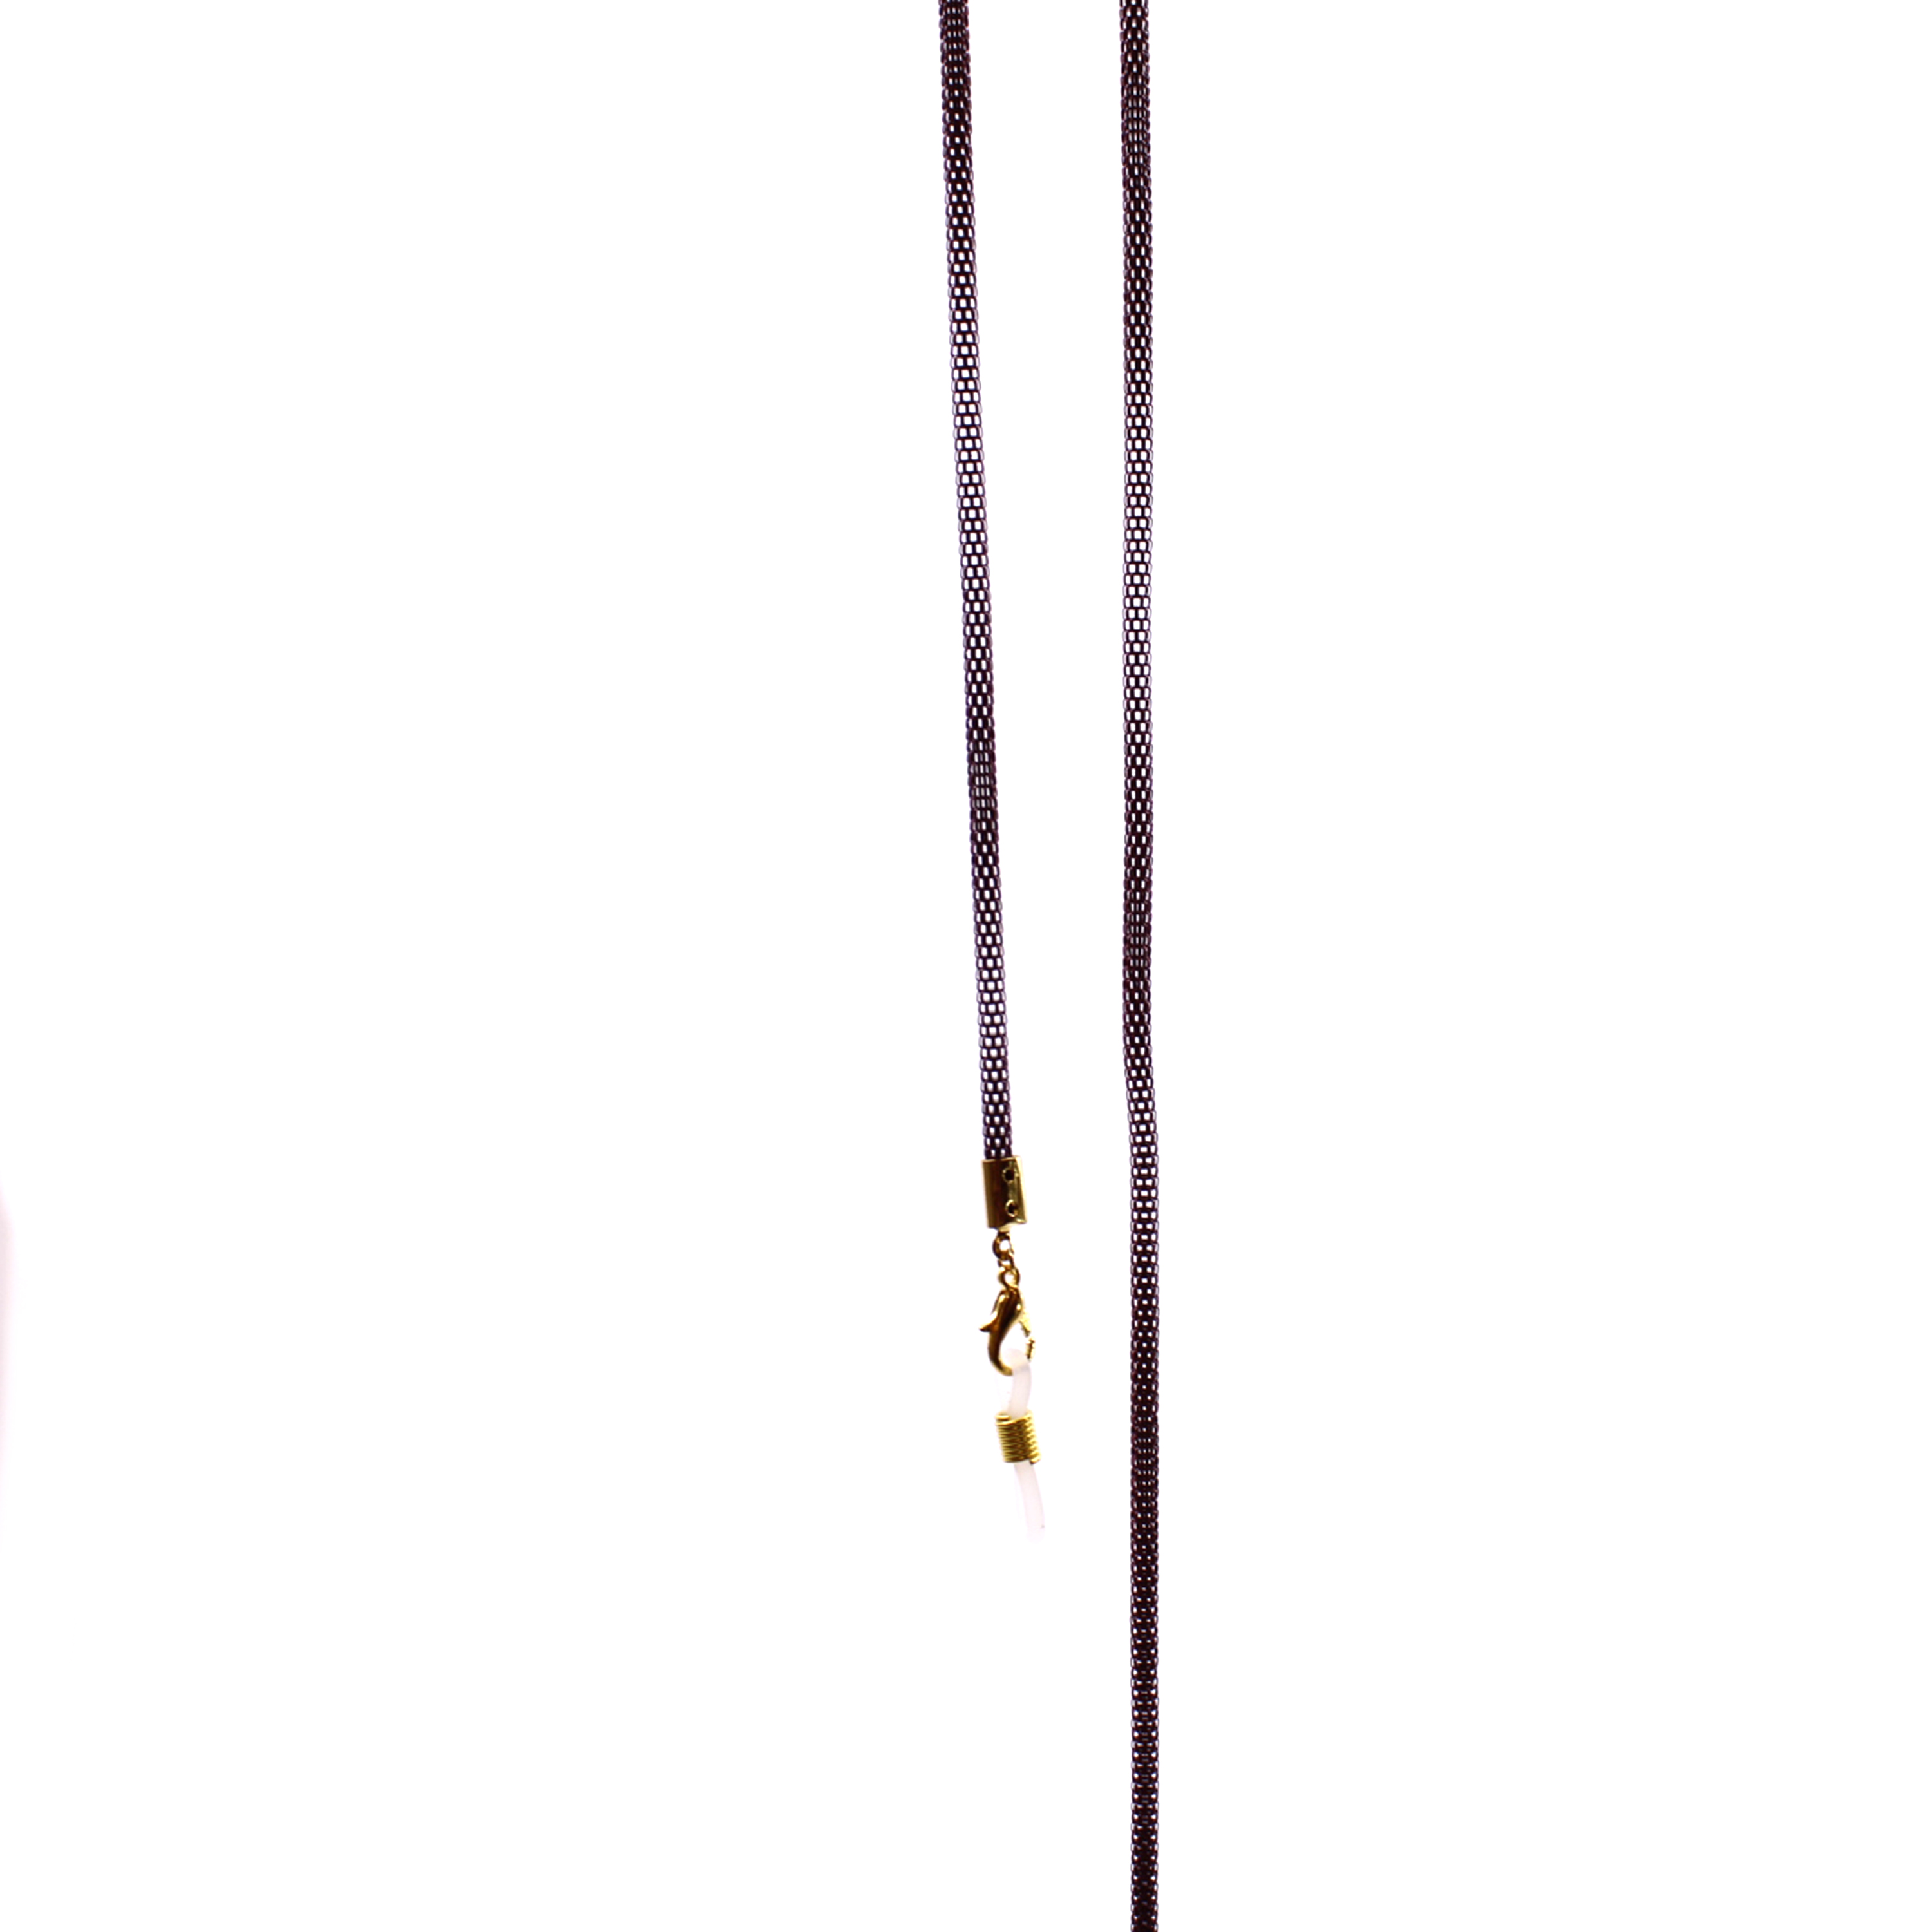 Αλυσίδα Μεταλλική Μπορντώ Elegant 70cm